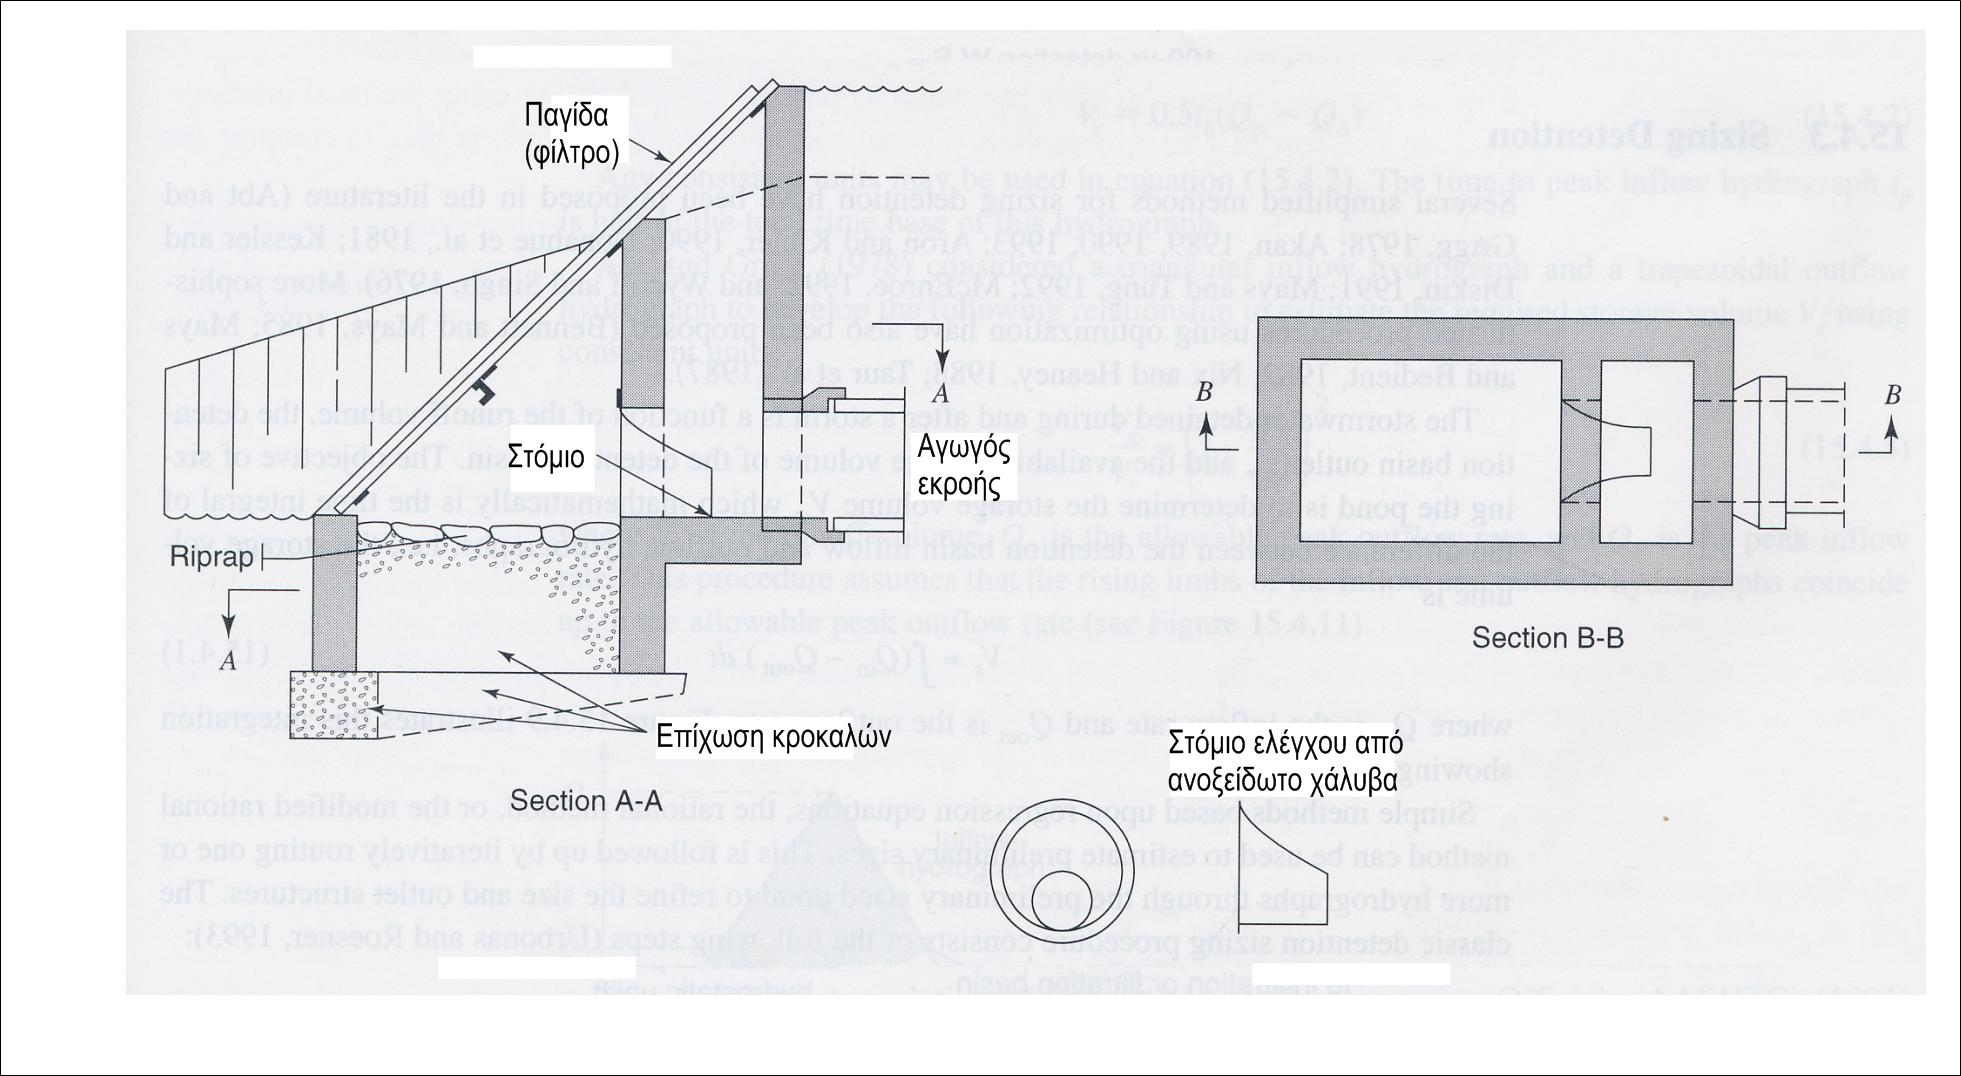 Σχήμα 7 Κατασκευή εκροής με σταθερό στόμιο ελέγχου (Από Urbonas and Roesner) (1993)).